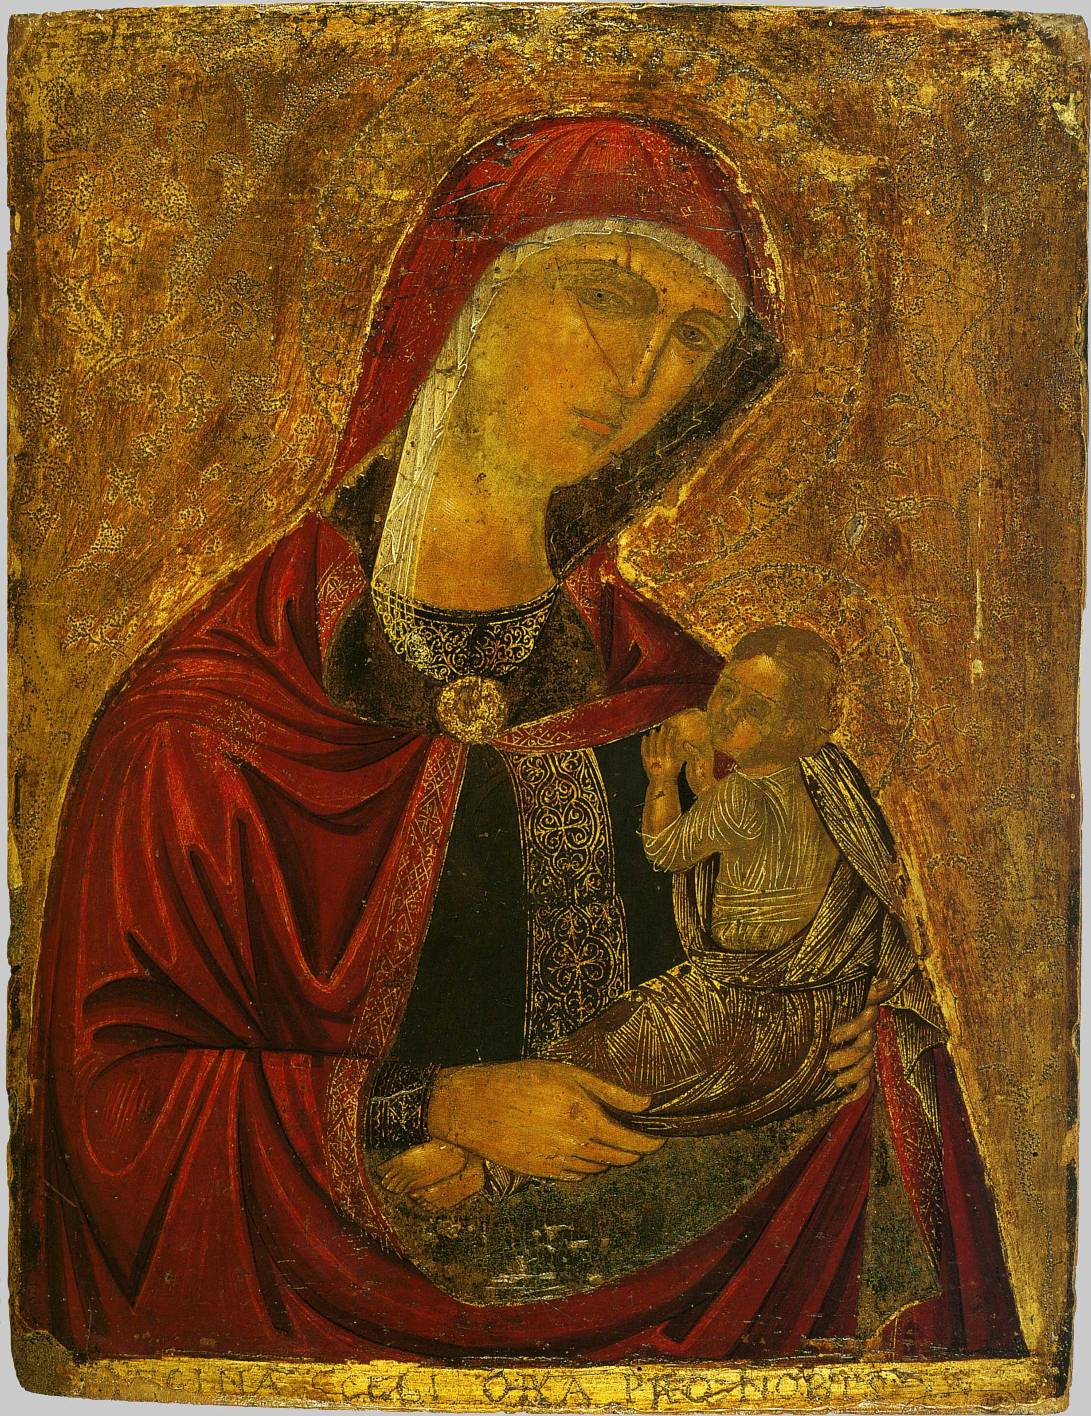 Икона Божией Матери "Млекопитательница", XVI в. Крит. Чеканка по сусальному золоту 